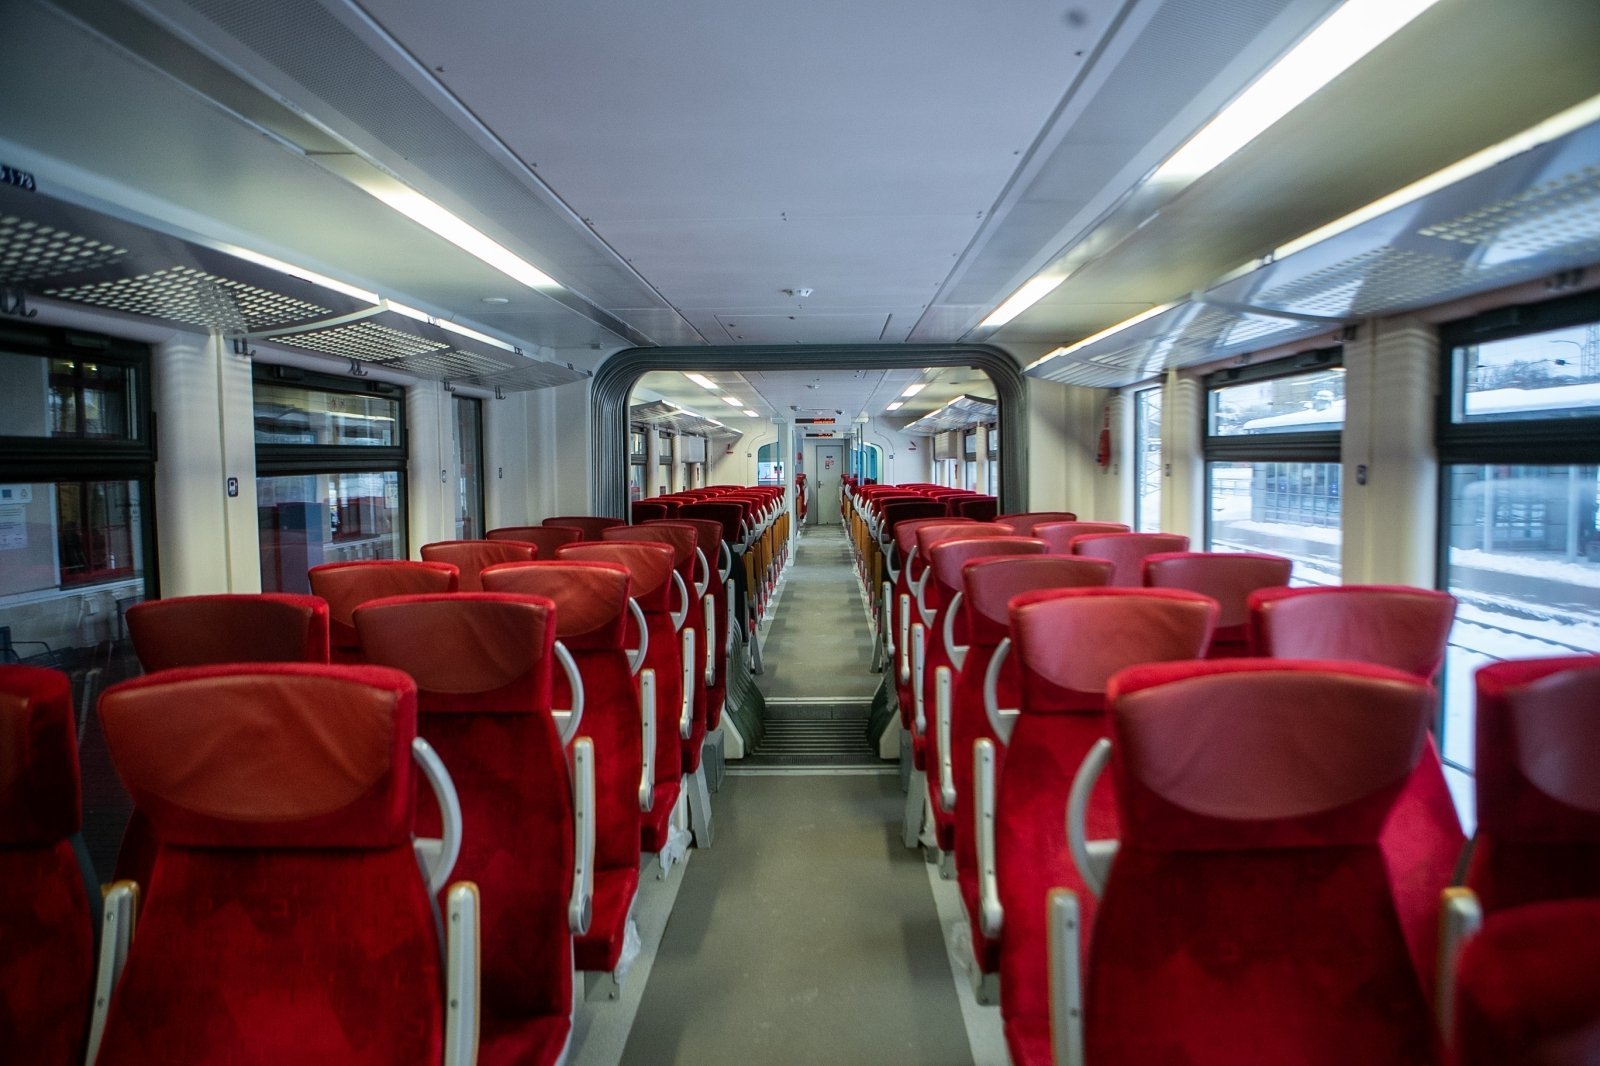 Svarbu keliaujantiems: dėl elektrifikacijos darbų pro Radviliškį važiuos mažiau traukinių – ką svarbu žinoti